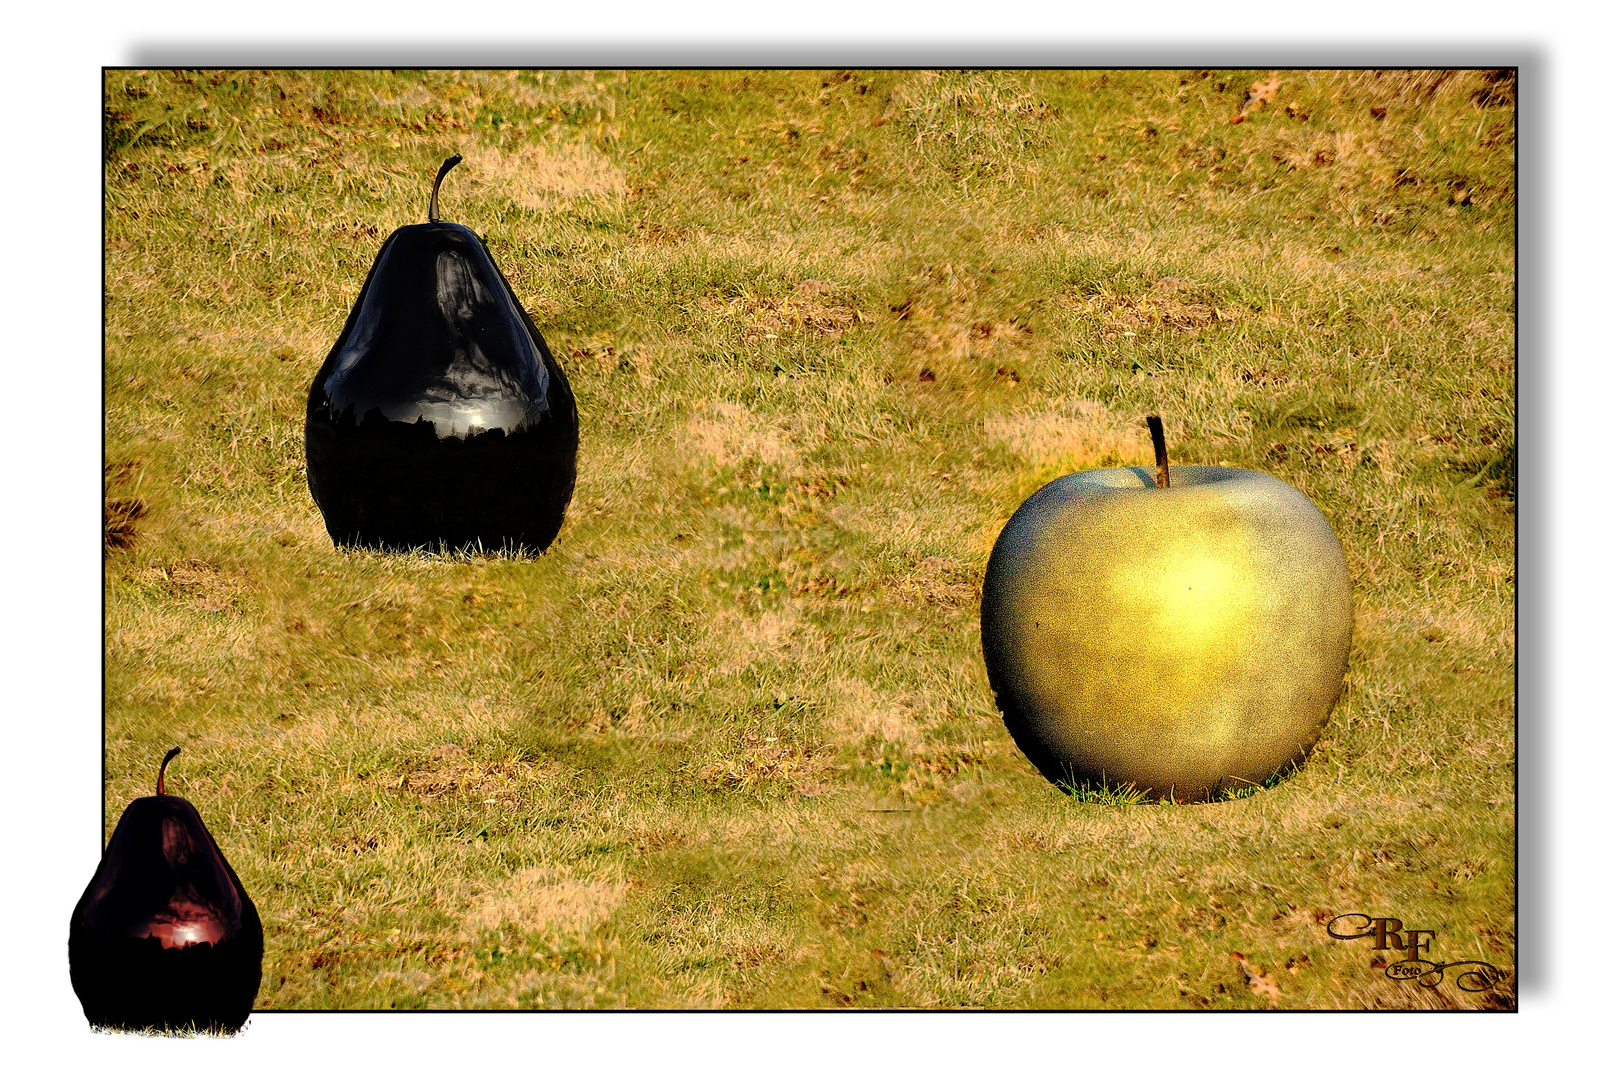 Collage mit Apfel und Birne 